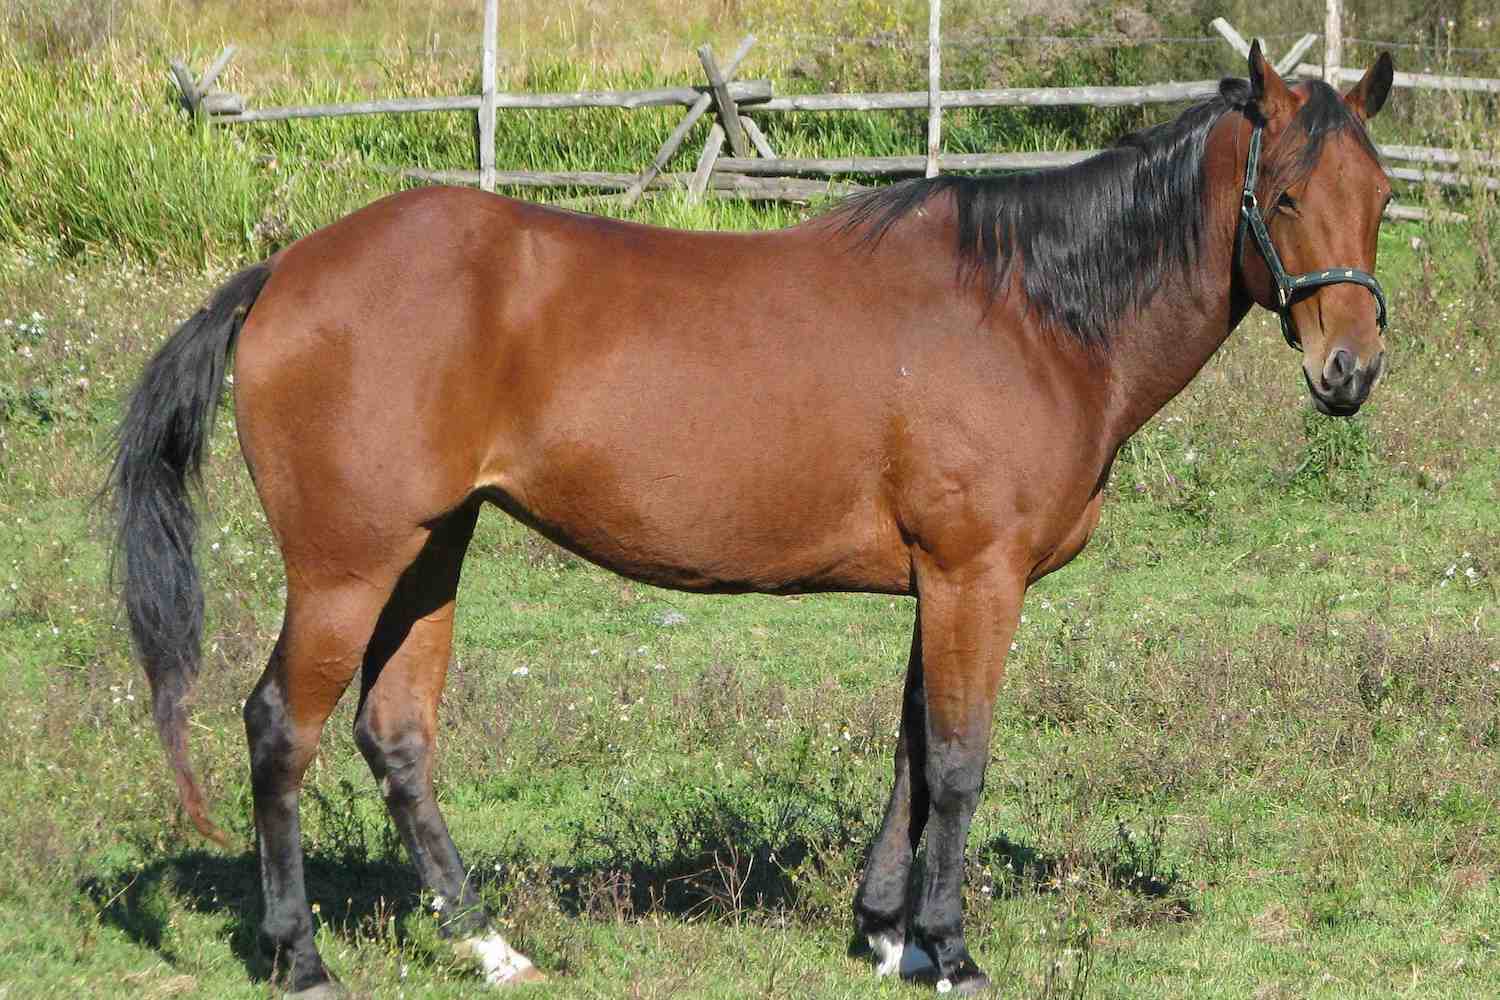 American quarter horse in a field